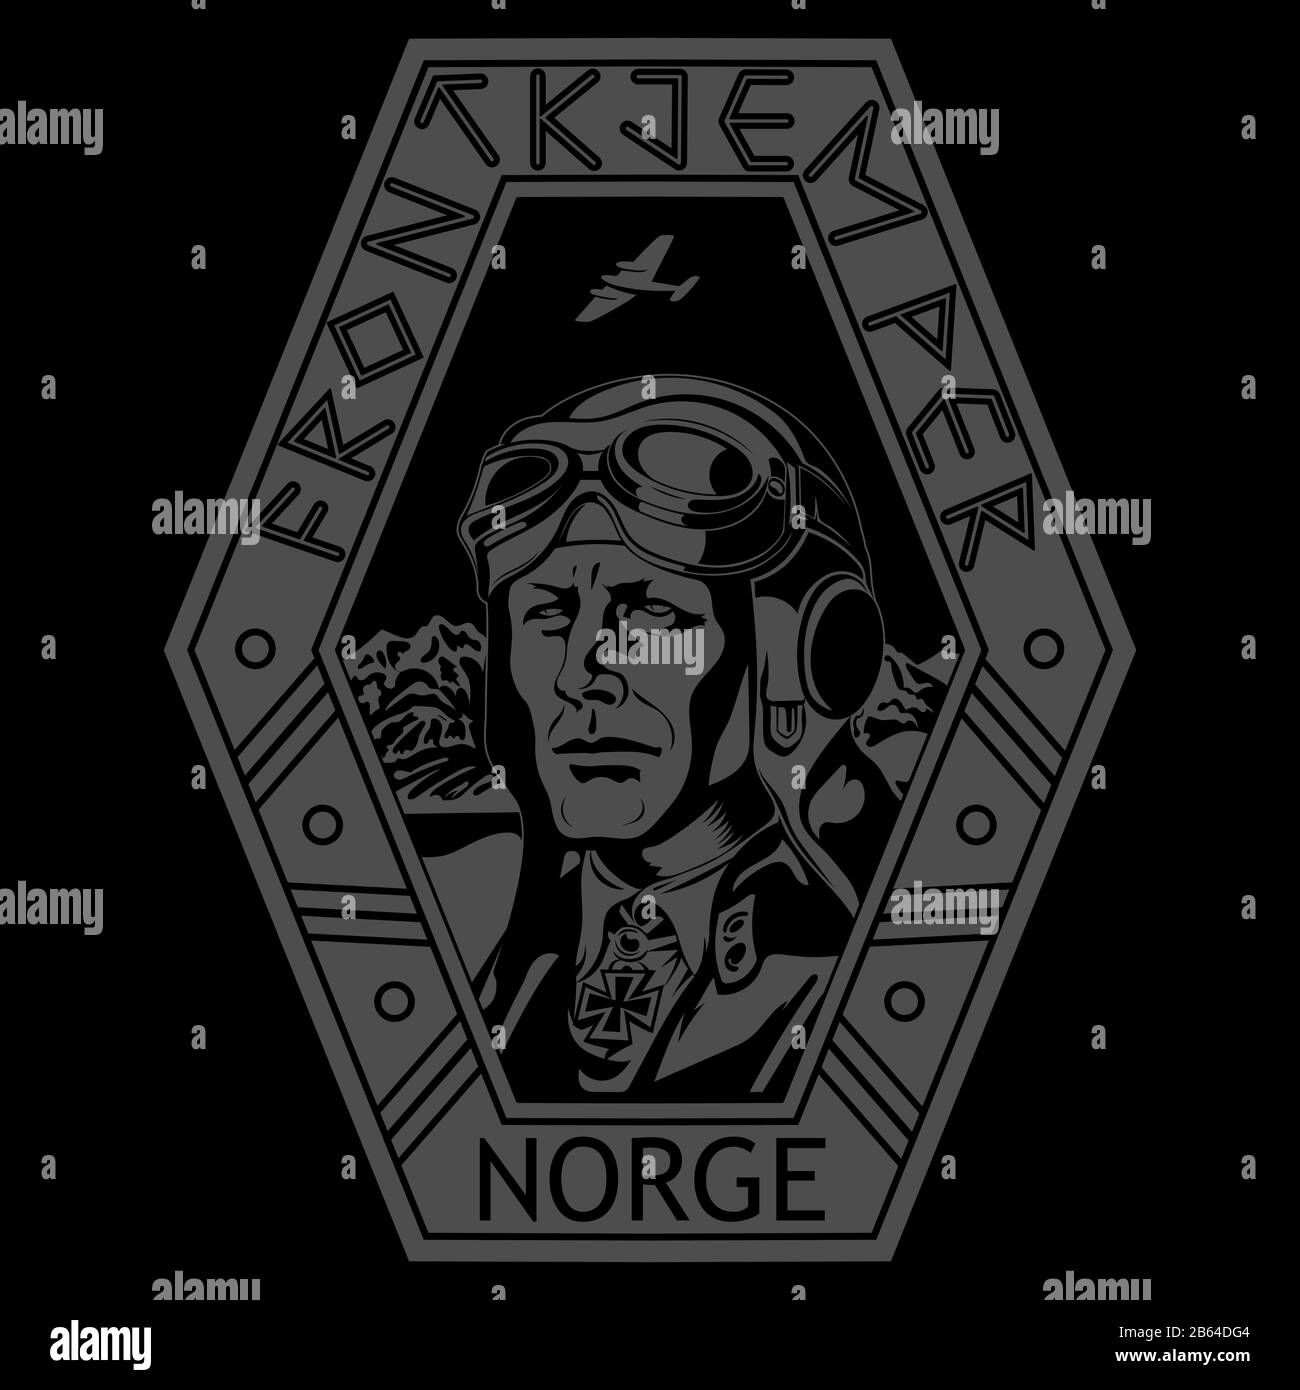 Jahrgangsbild eines Weltkriege-II-Piloten. Pilot der norwegischen Streitkräfte. Norwegische Aufschriften Frontkjemper-Frontline-Kämpfer und Norge-Norwegen Stock Vektor